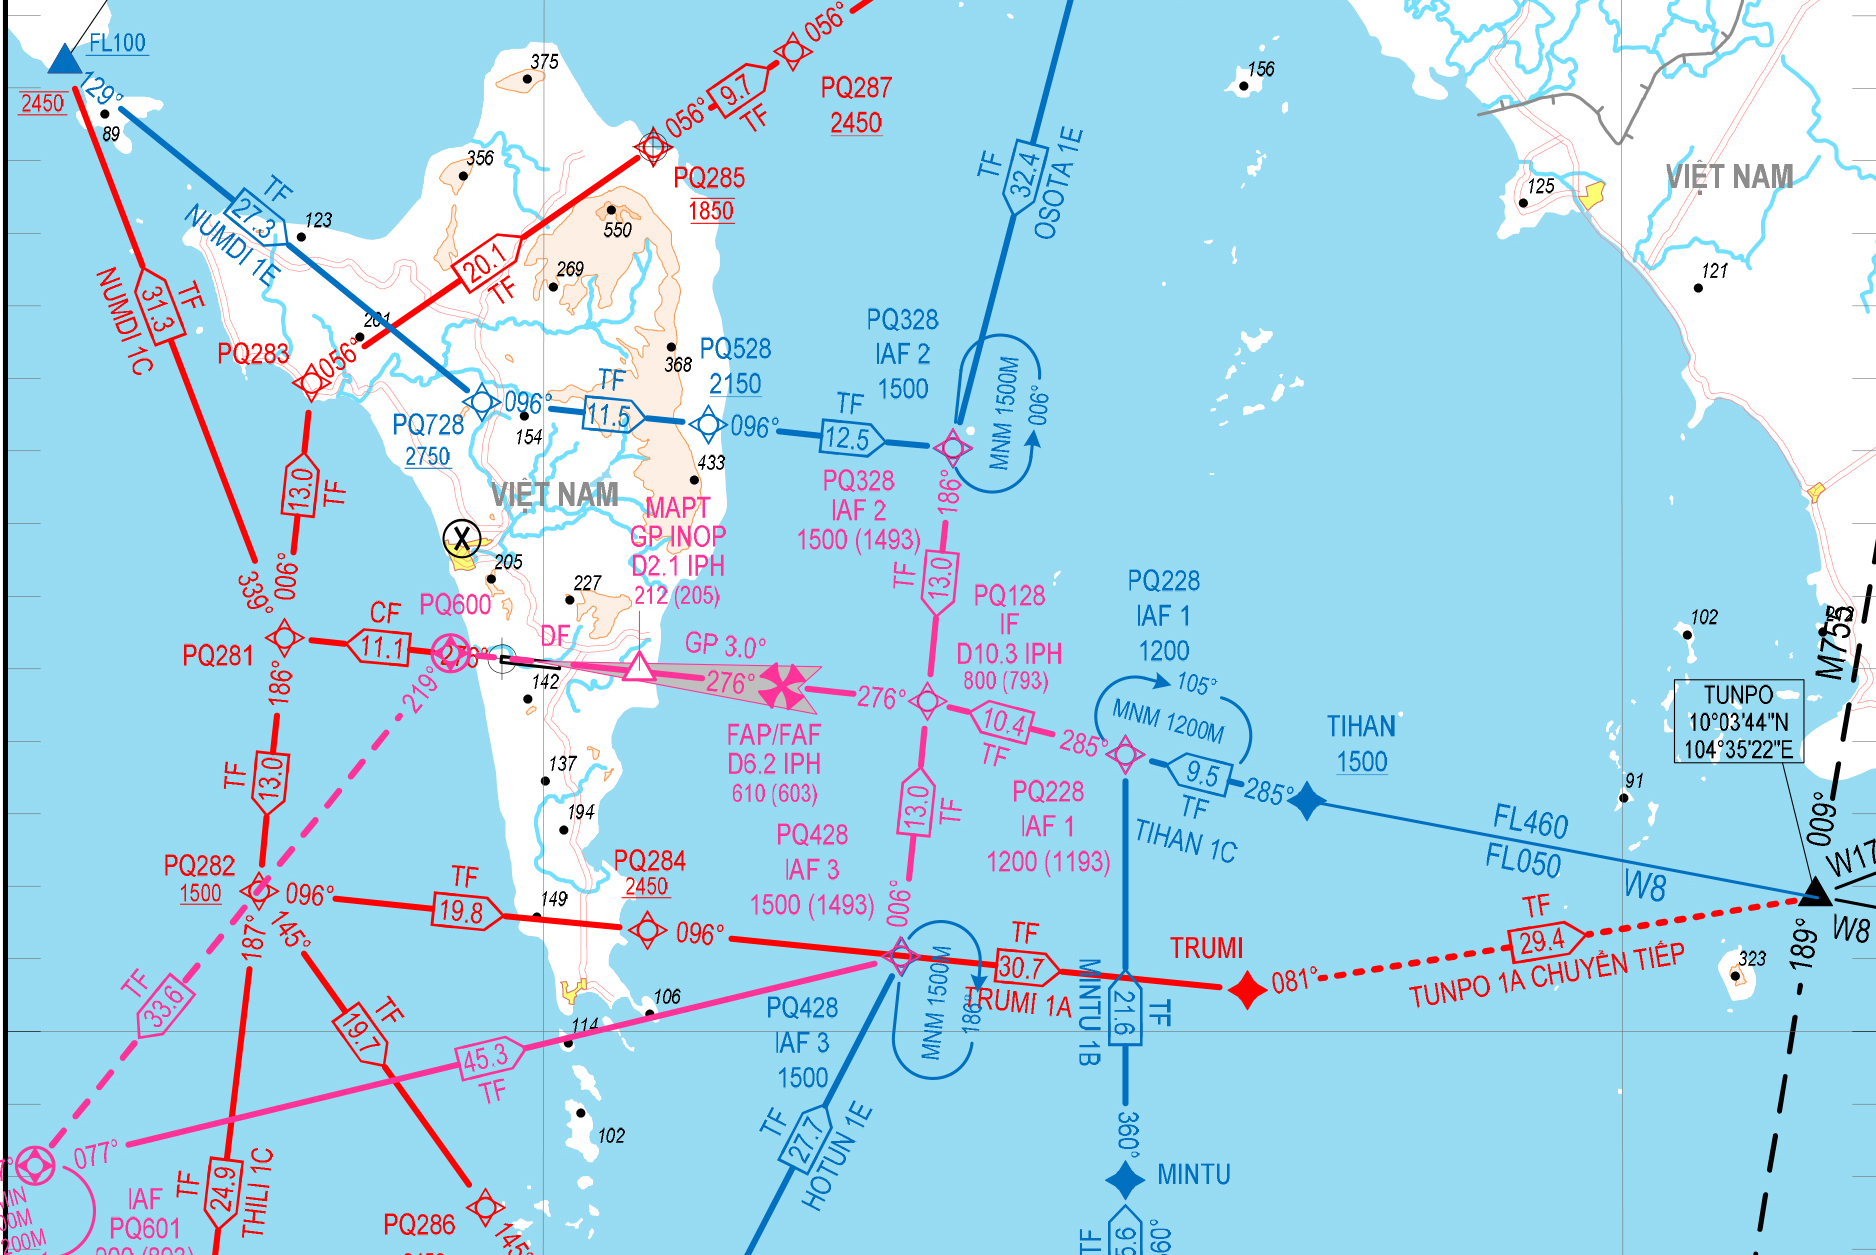 Thông tin báo chí: VATM triển khai áp dụng hệ thống phương thức bay mới tại sân bay Phú Quốc